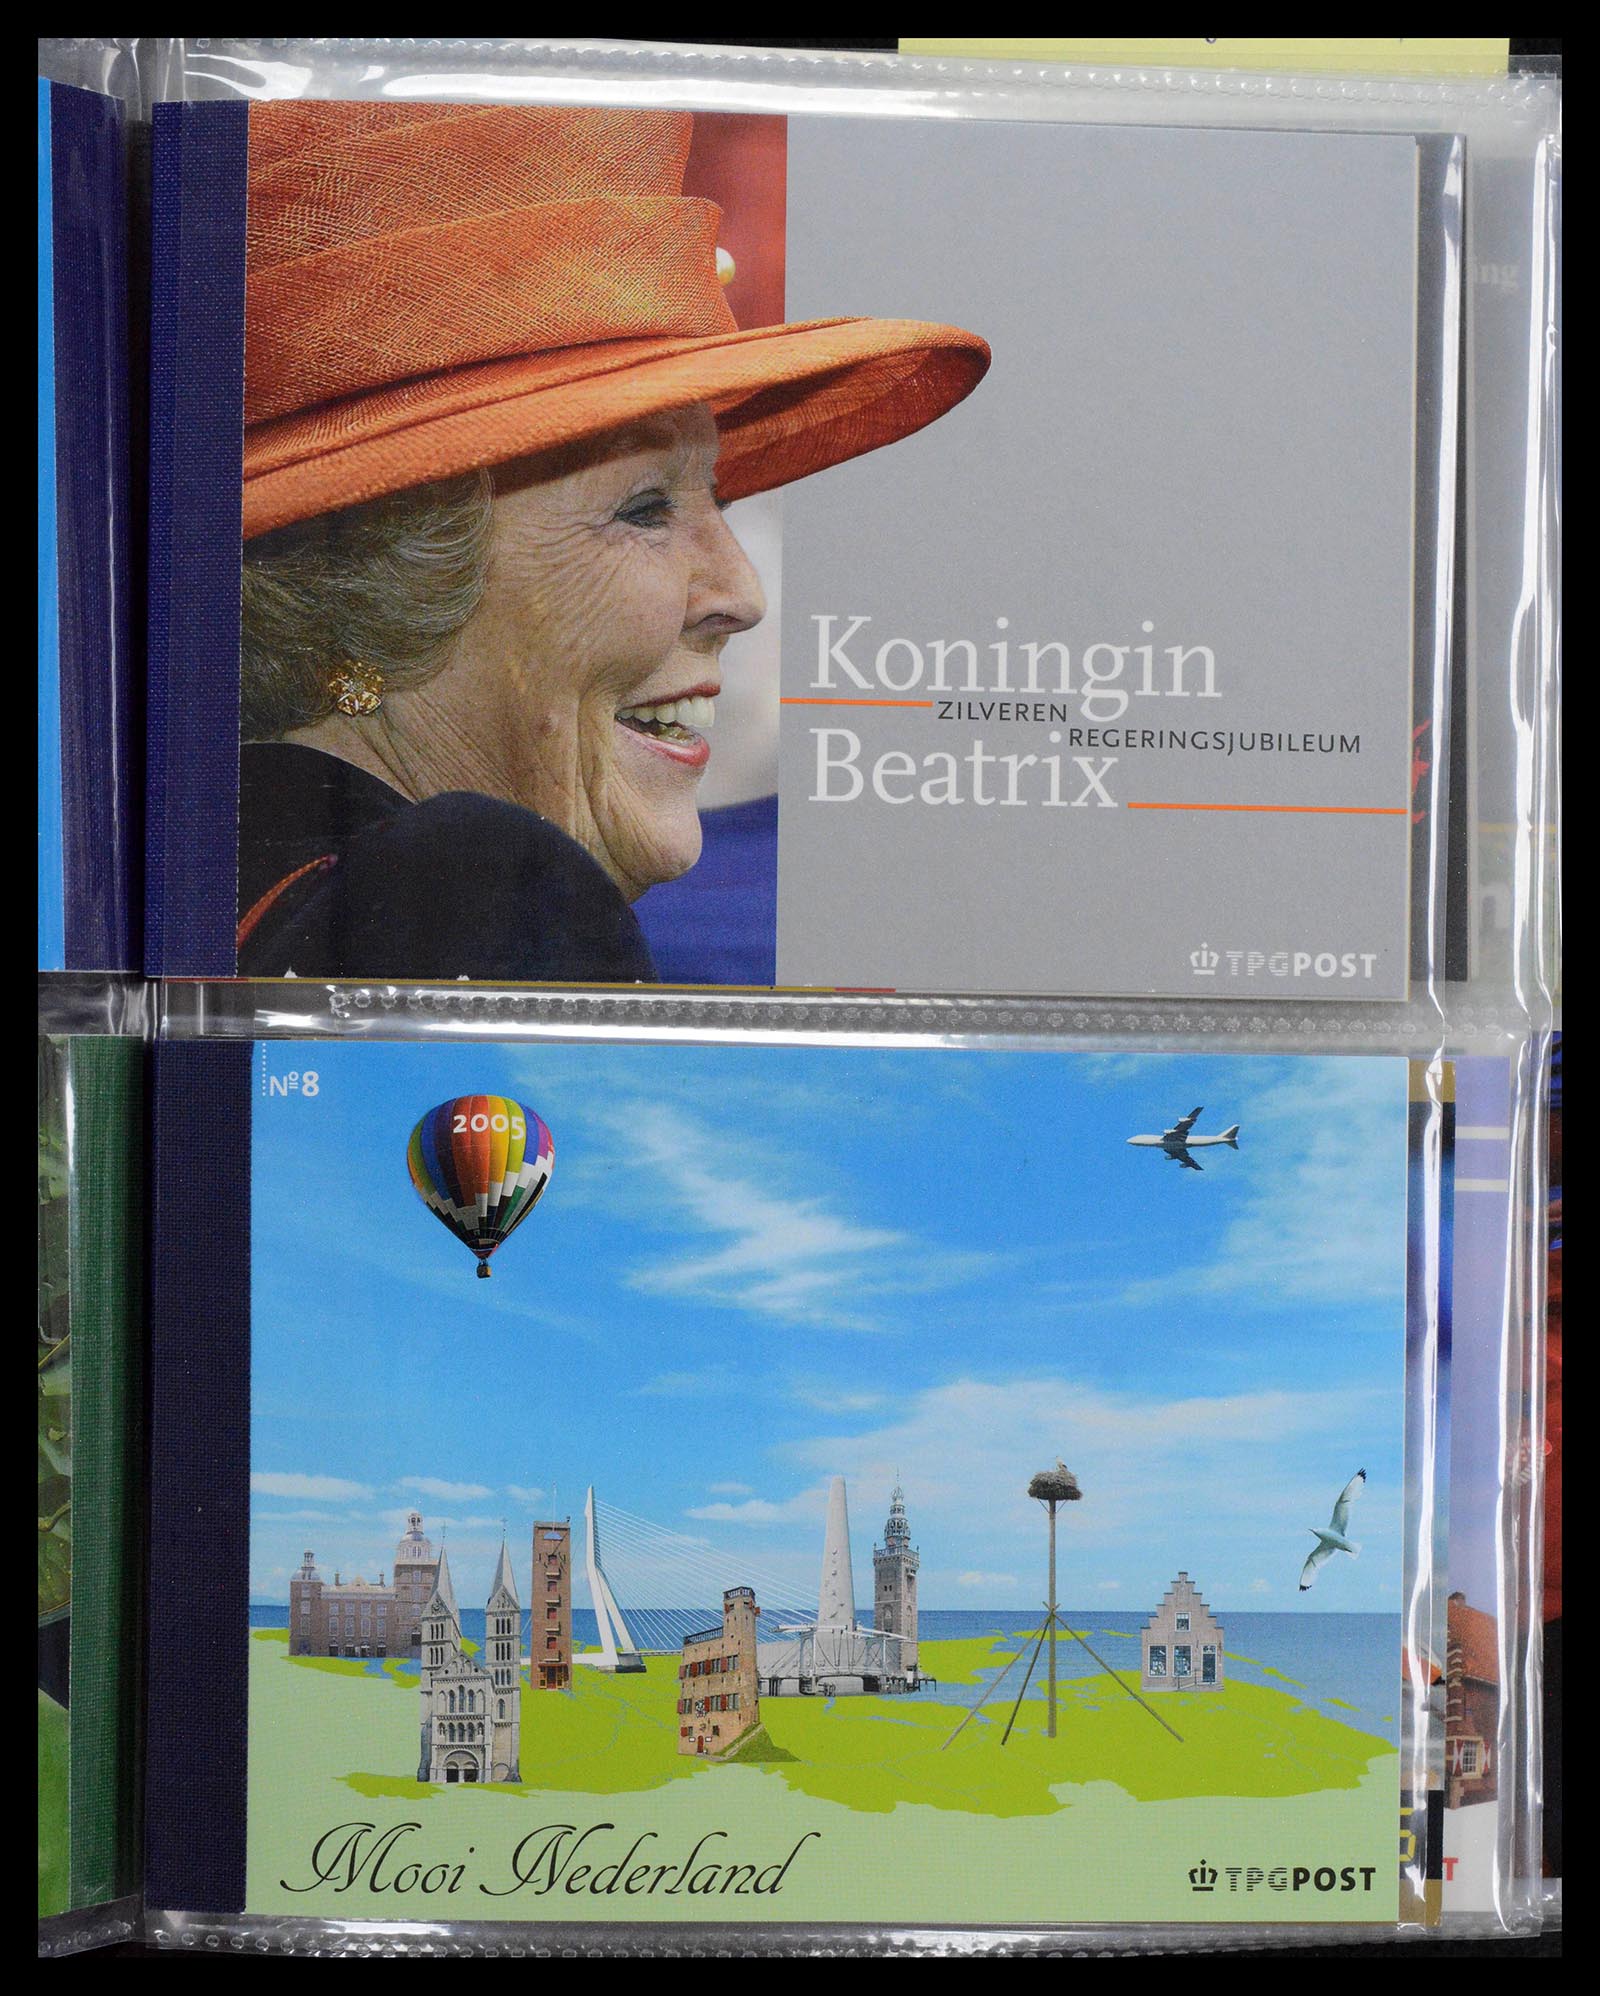 39018 0004 - Stamp collection 39018 Netherlands prestige booklets 2003-2016.